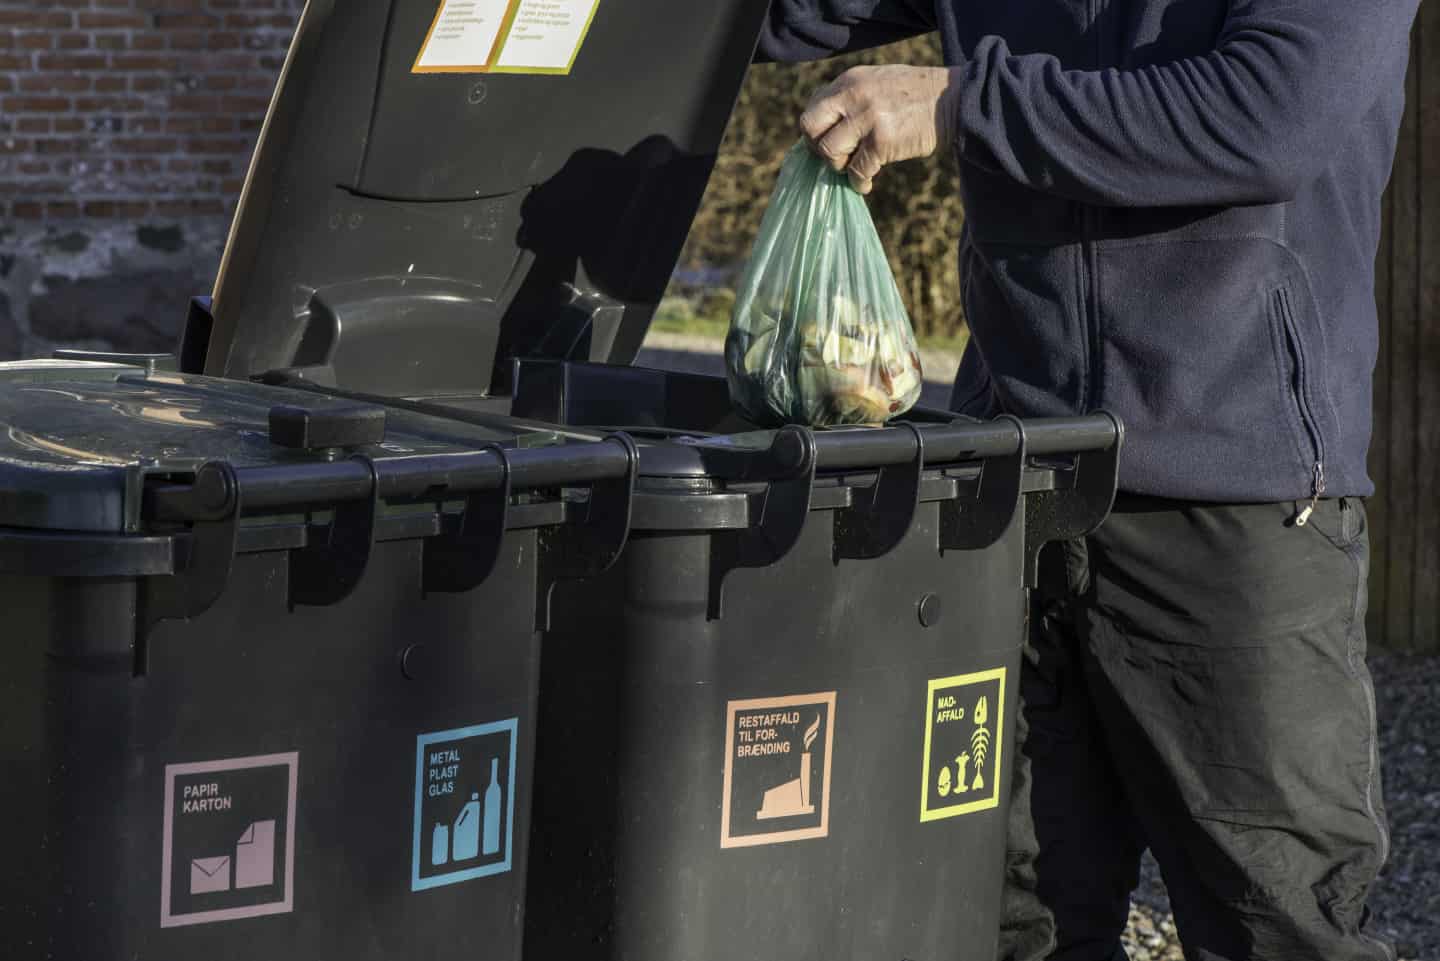 Hvis spisekammer gennembore Kommunen deler færre skraldeposer ud: Sparer 18 ton plastik | ugeavisen.dk